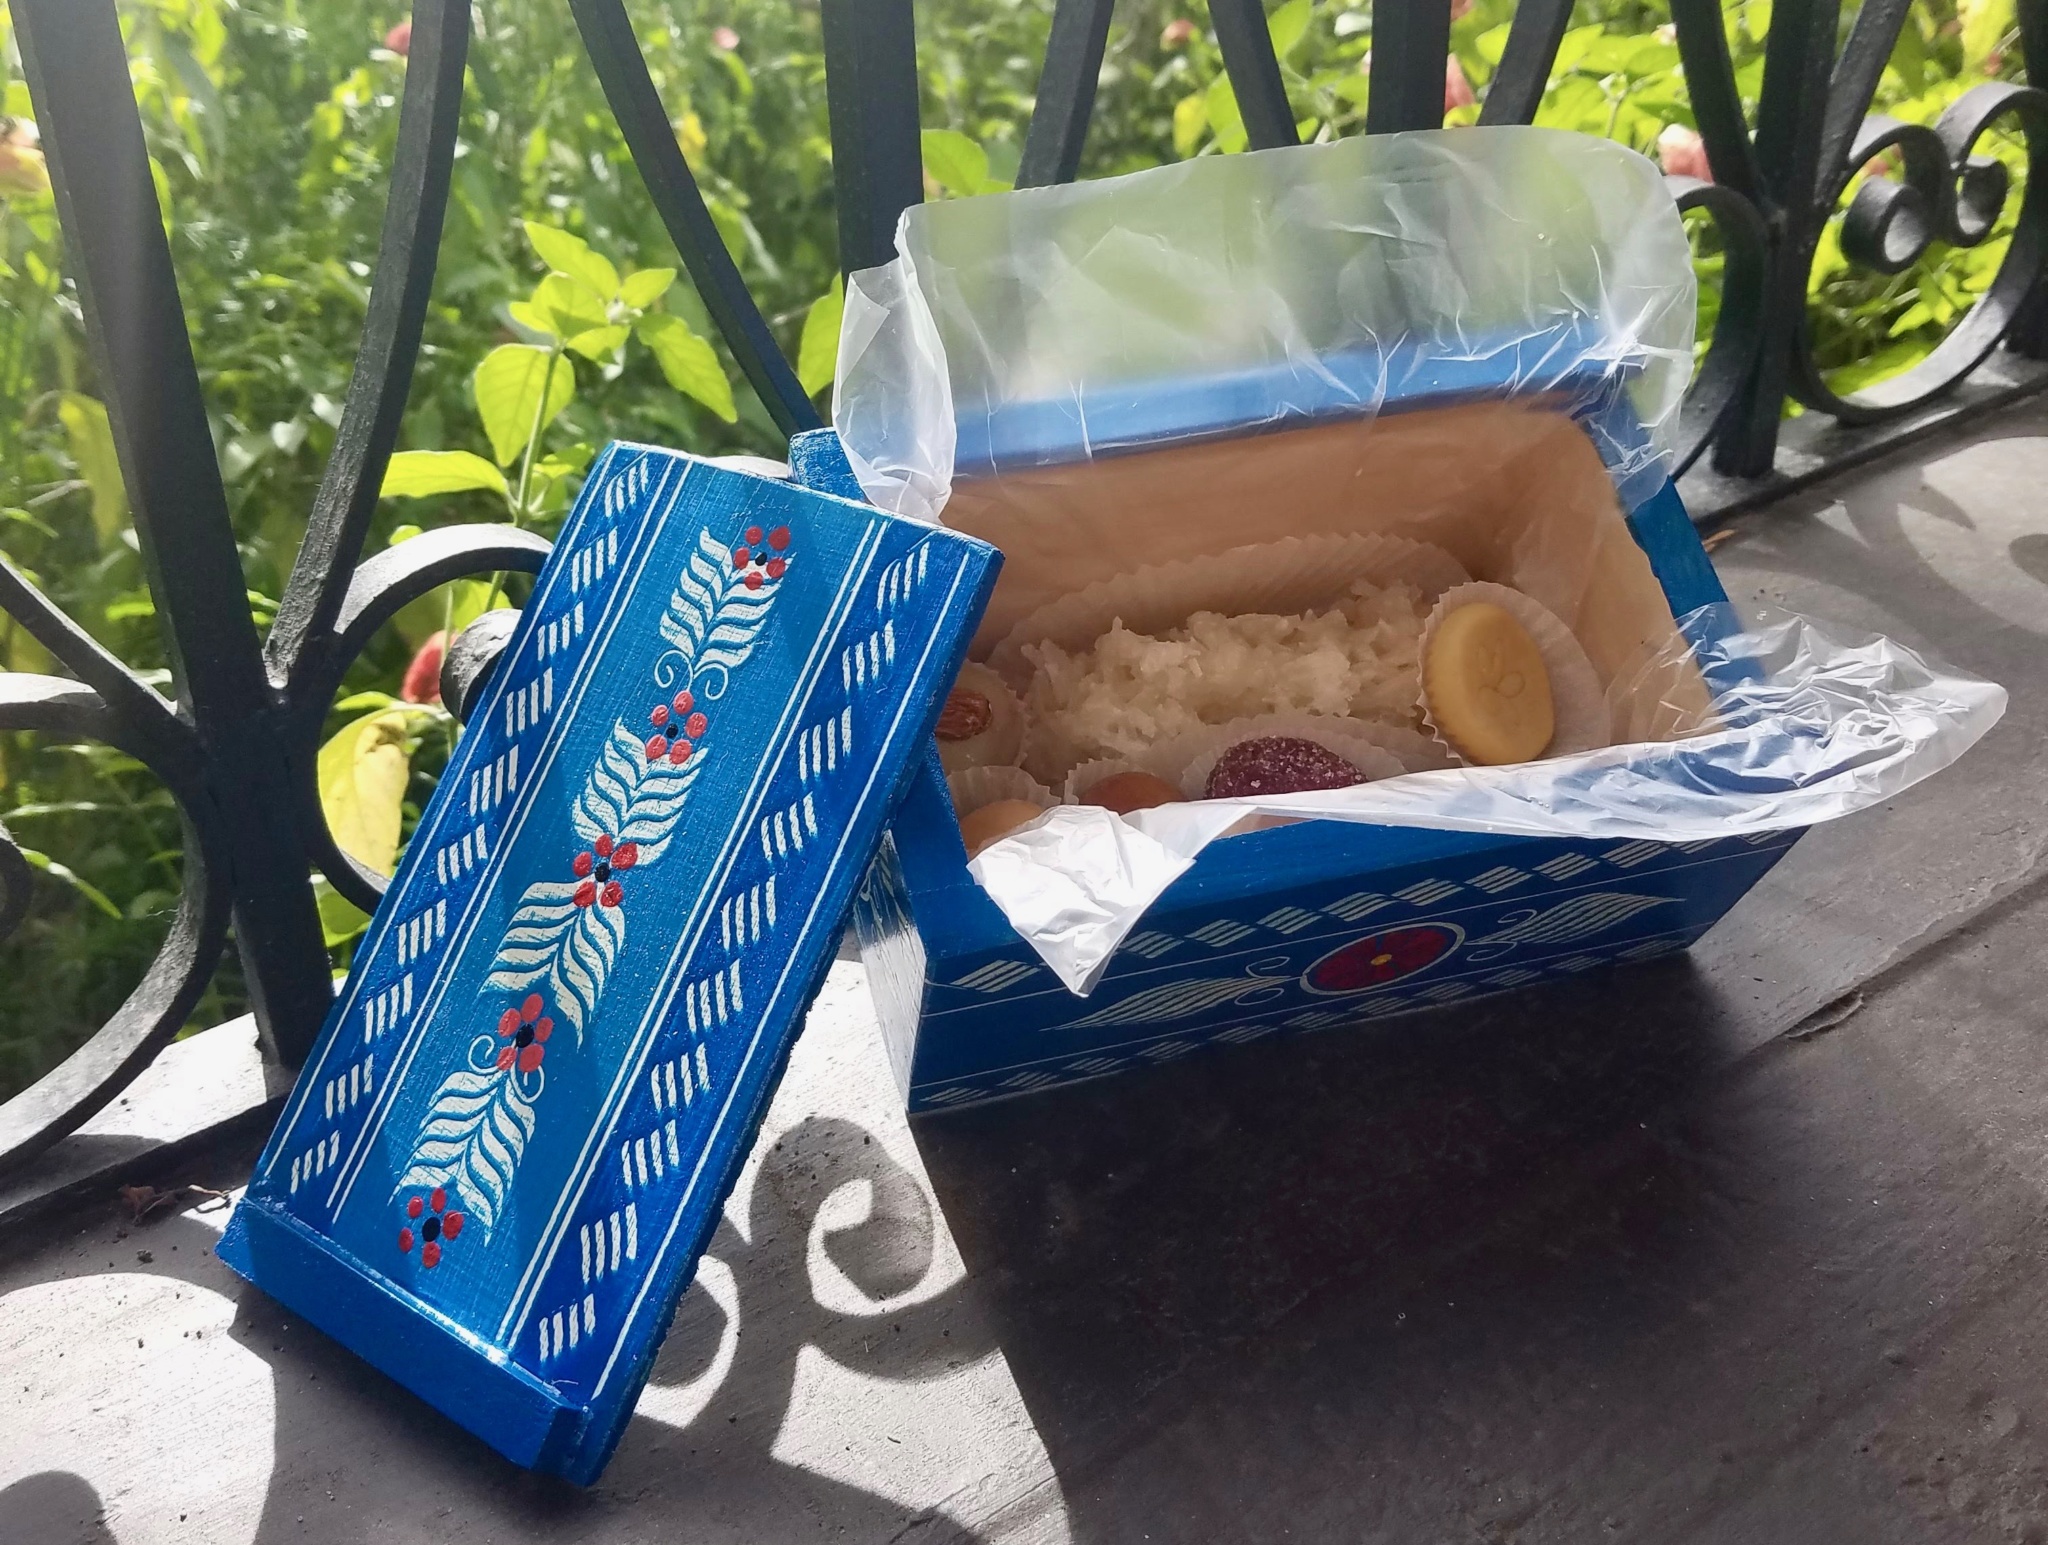 Open box of Guatemalan candy